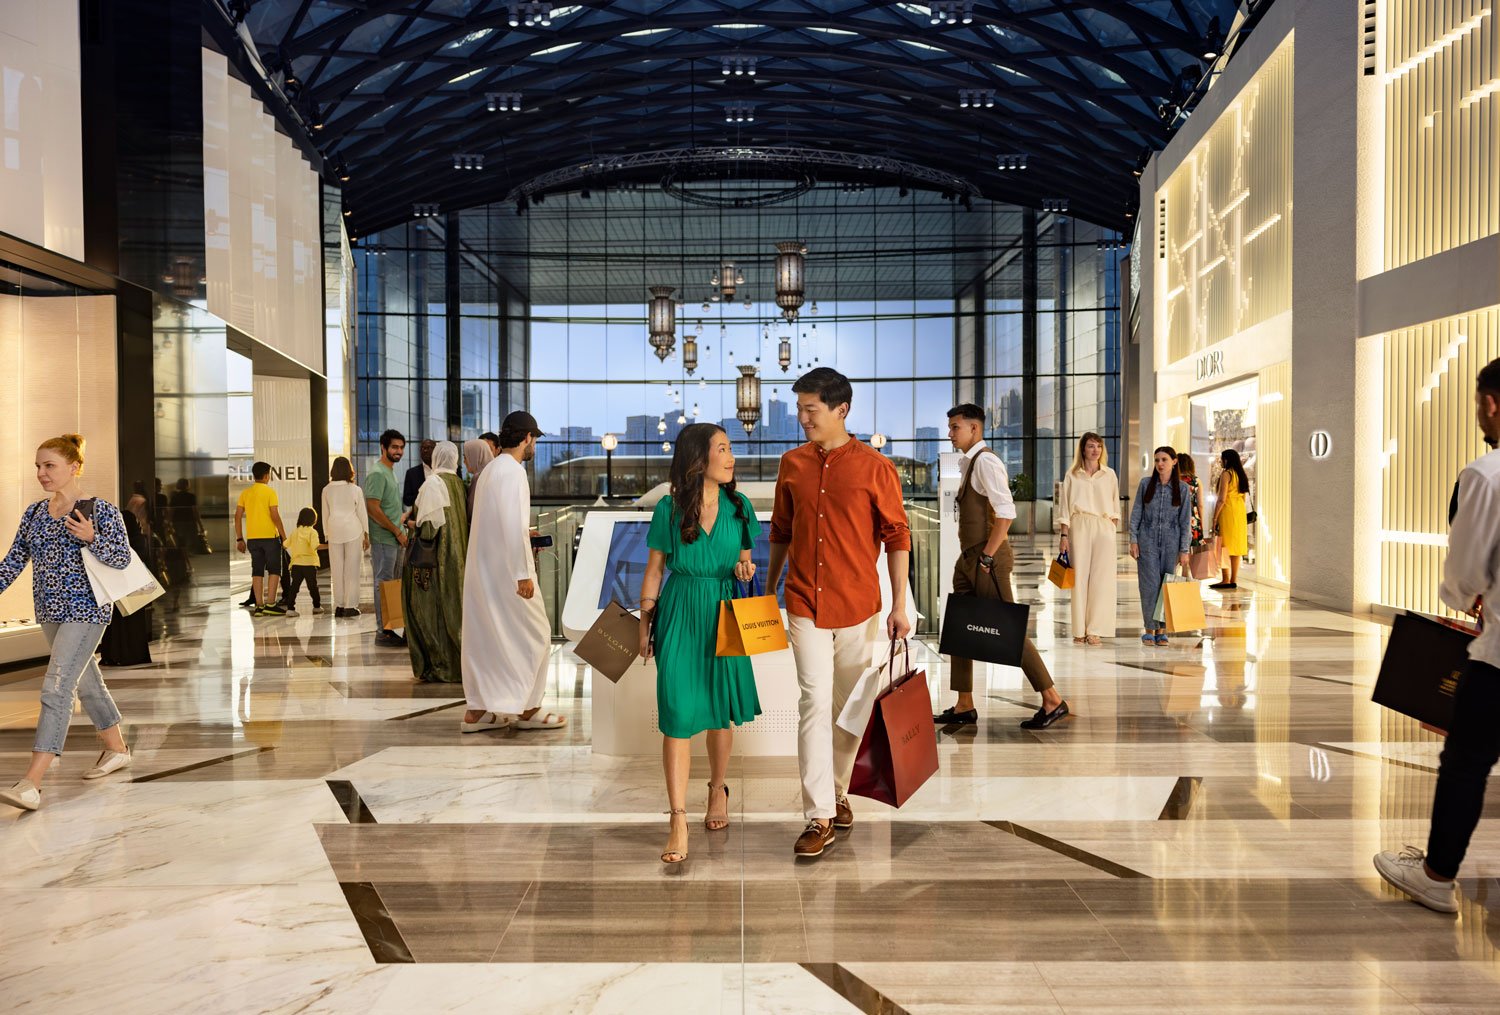 בואו לערוך קניות באווירה של פאר במרכז הקניות "גלריה" באי אל מאריה (Galleria Al Maryah Island).